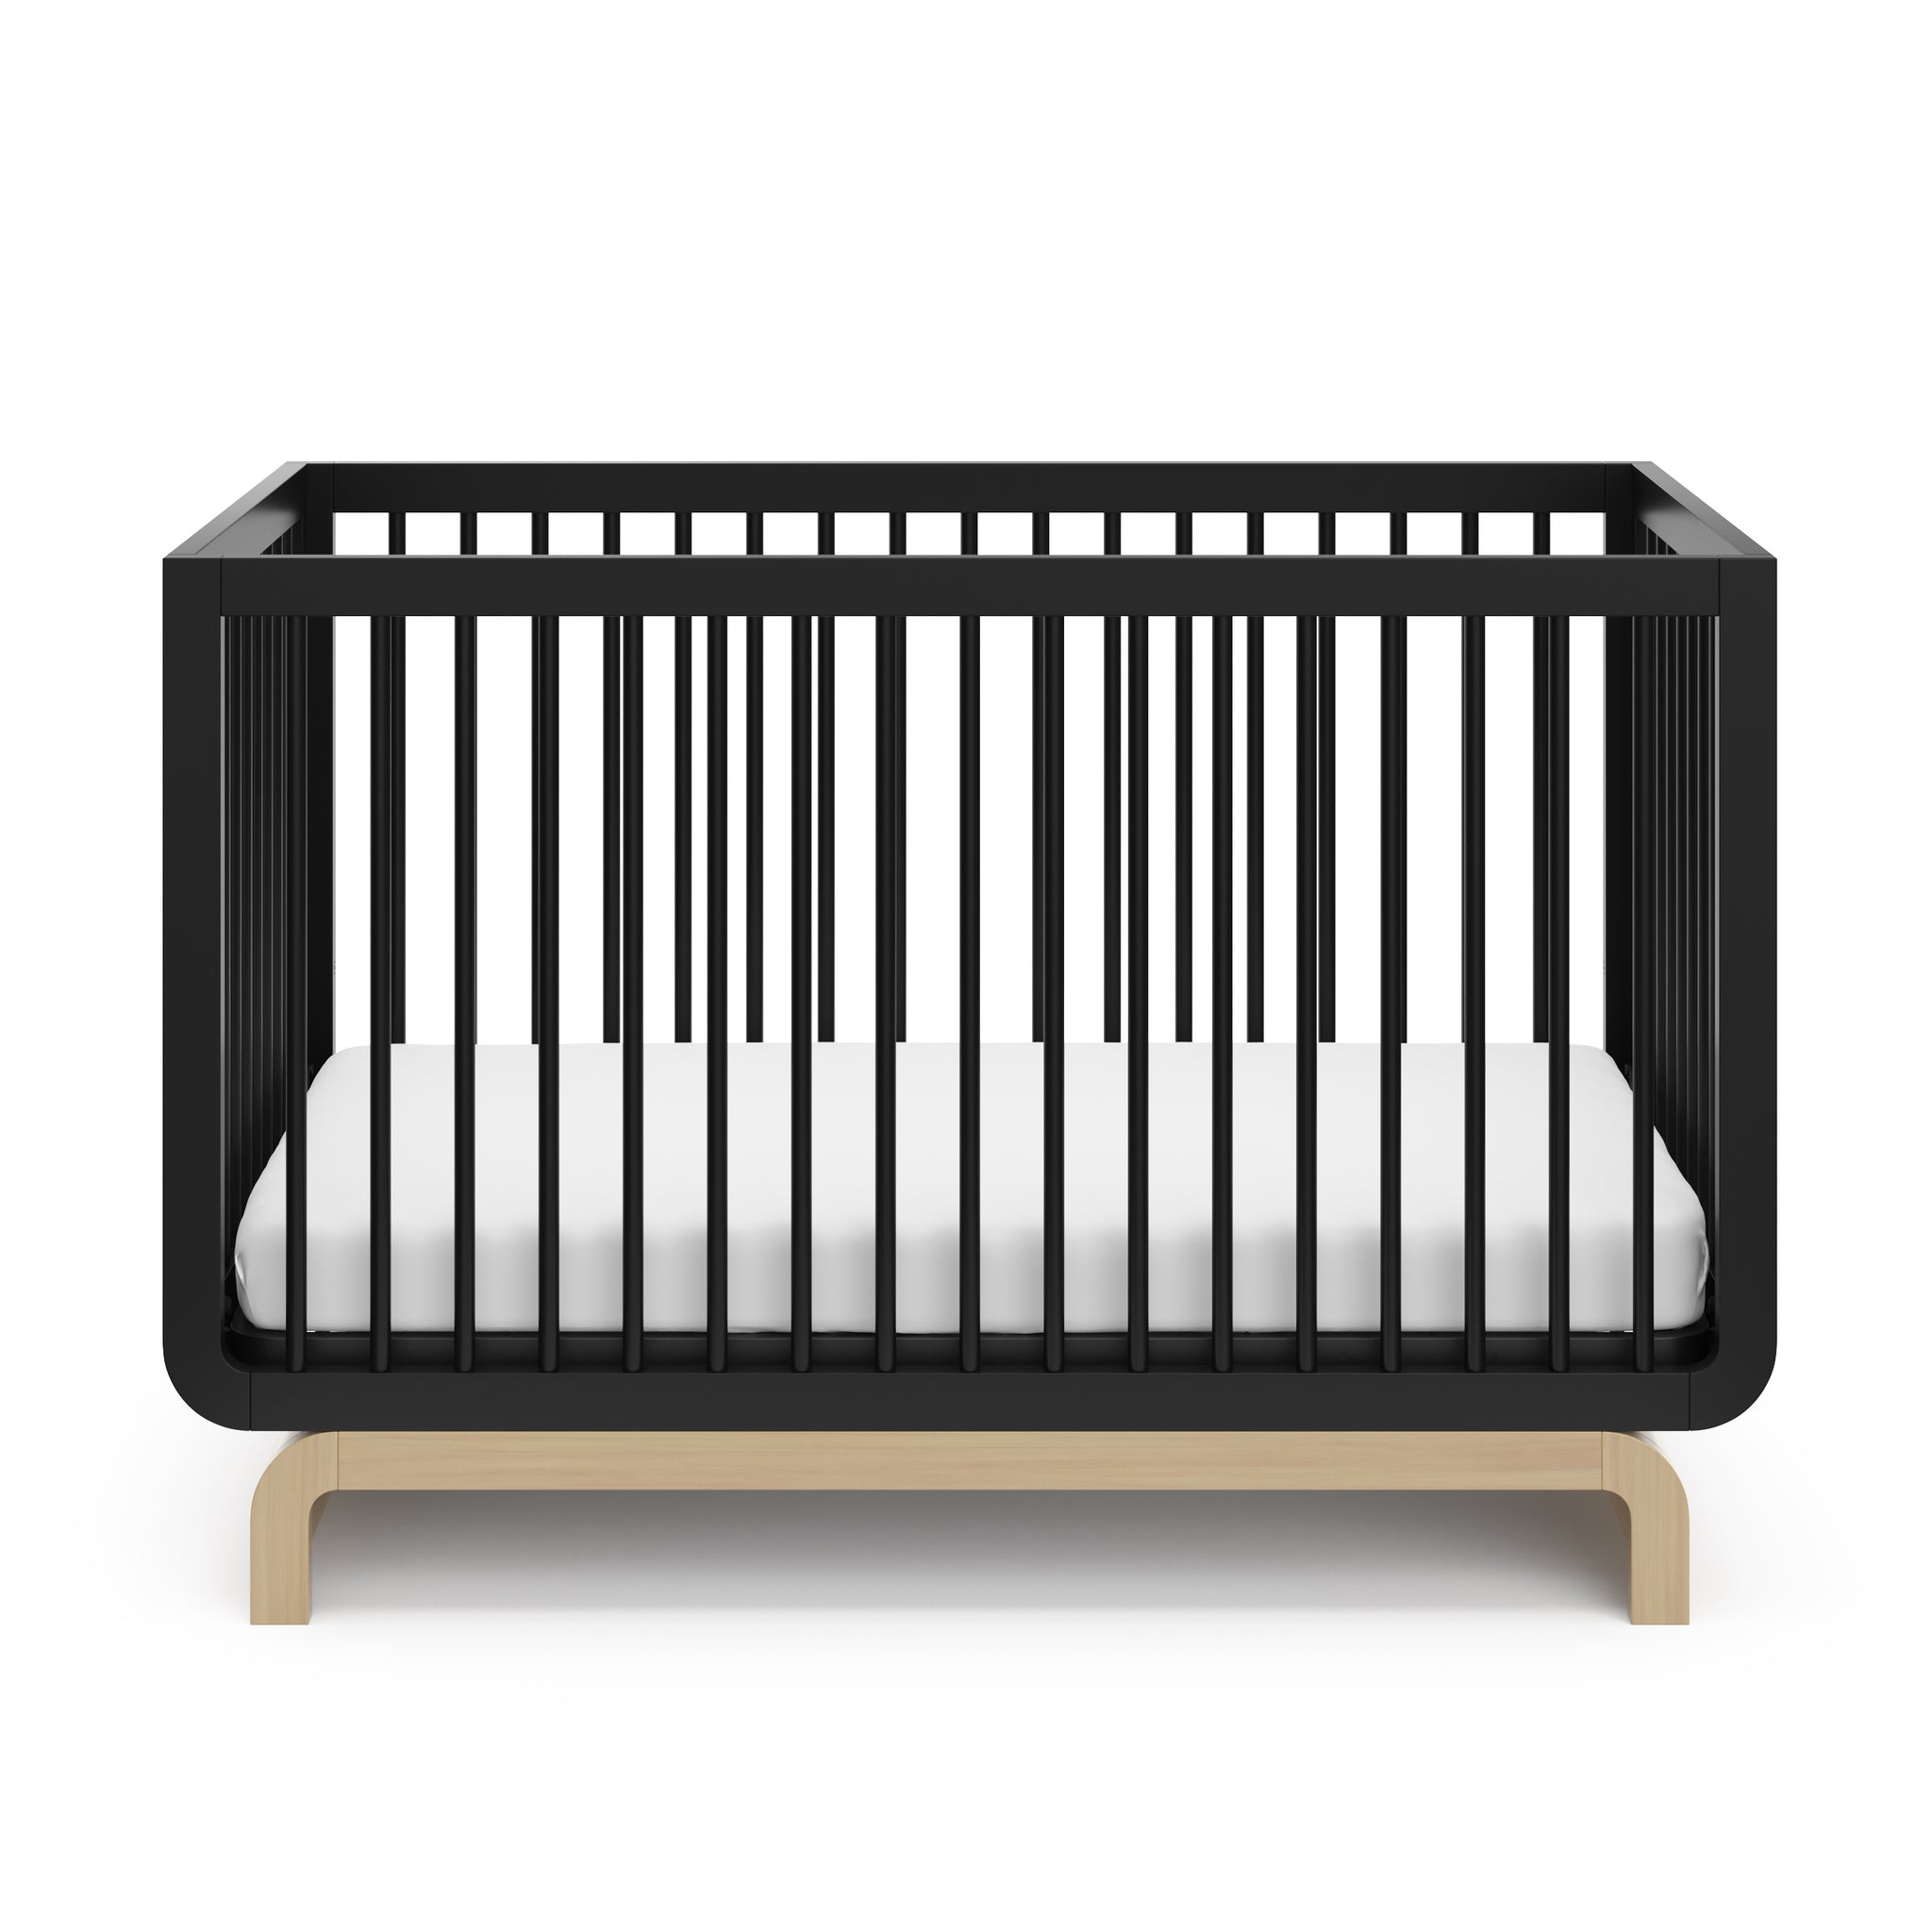 Two-tone black and natural wood baby crib, at a front-facing angle